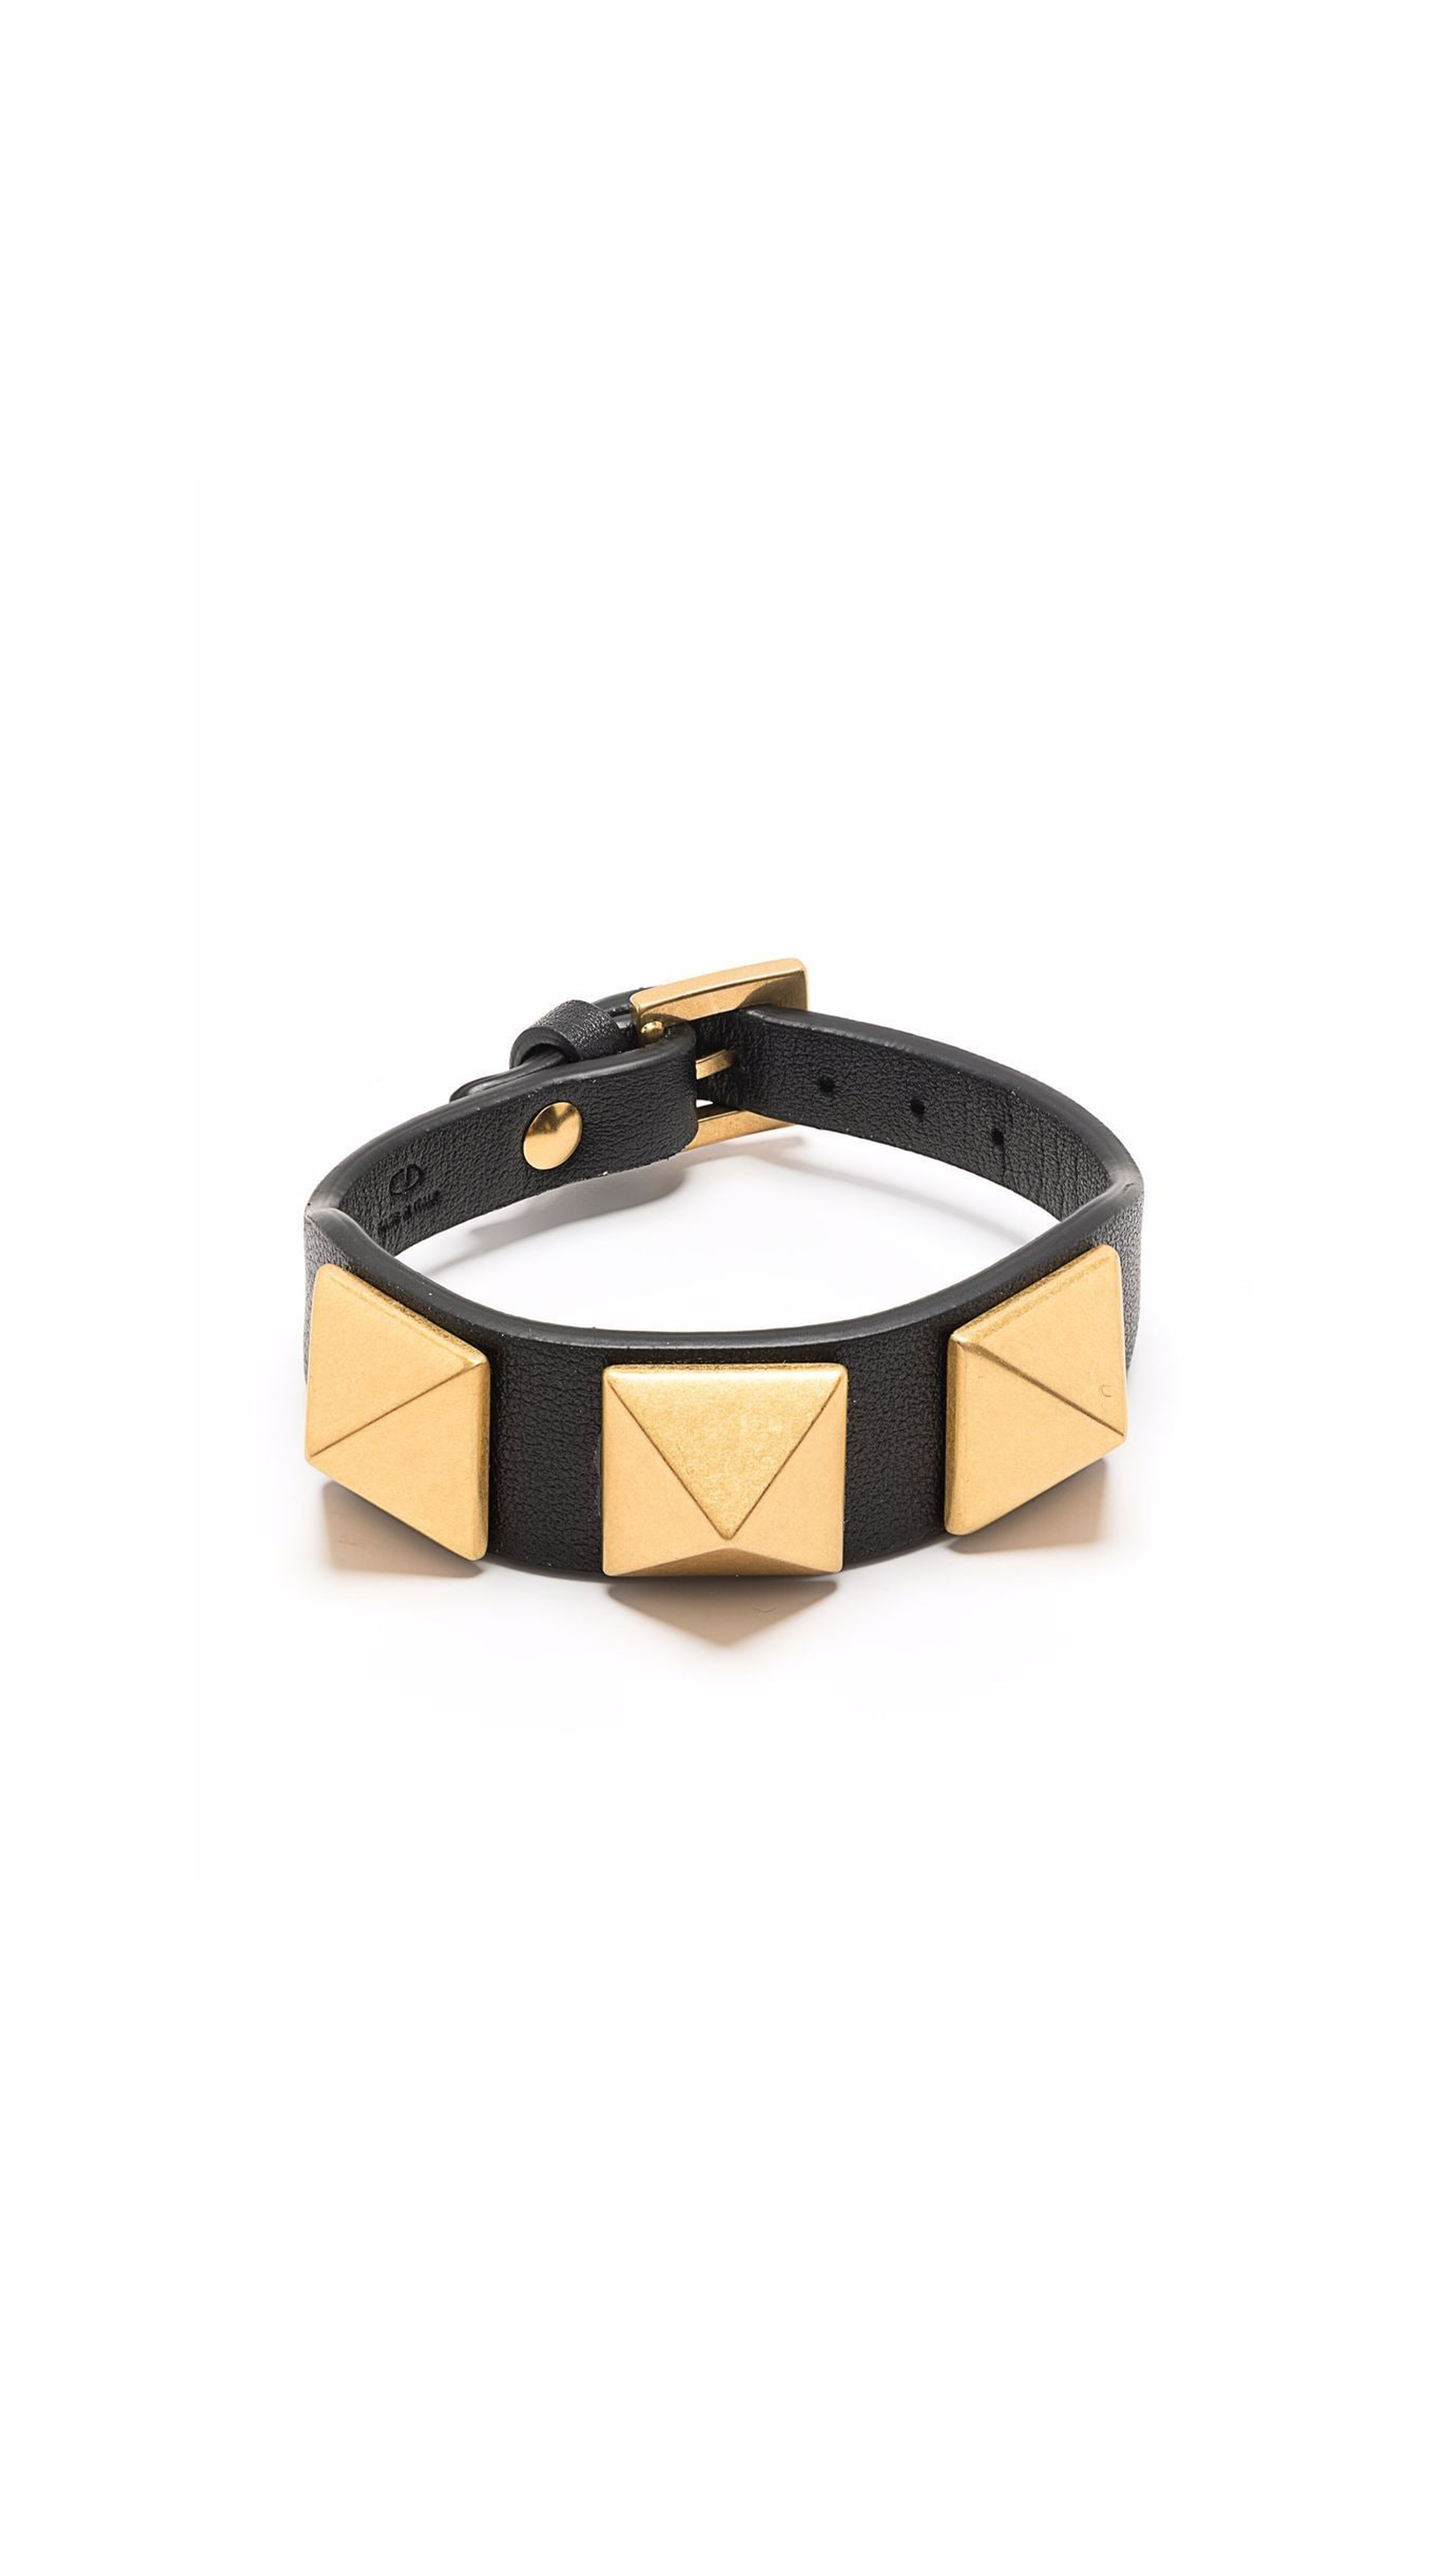 Rockstud Leather Bracelet - Black / Golden